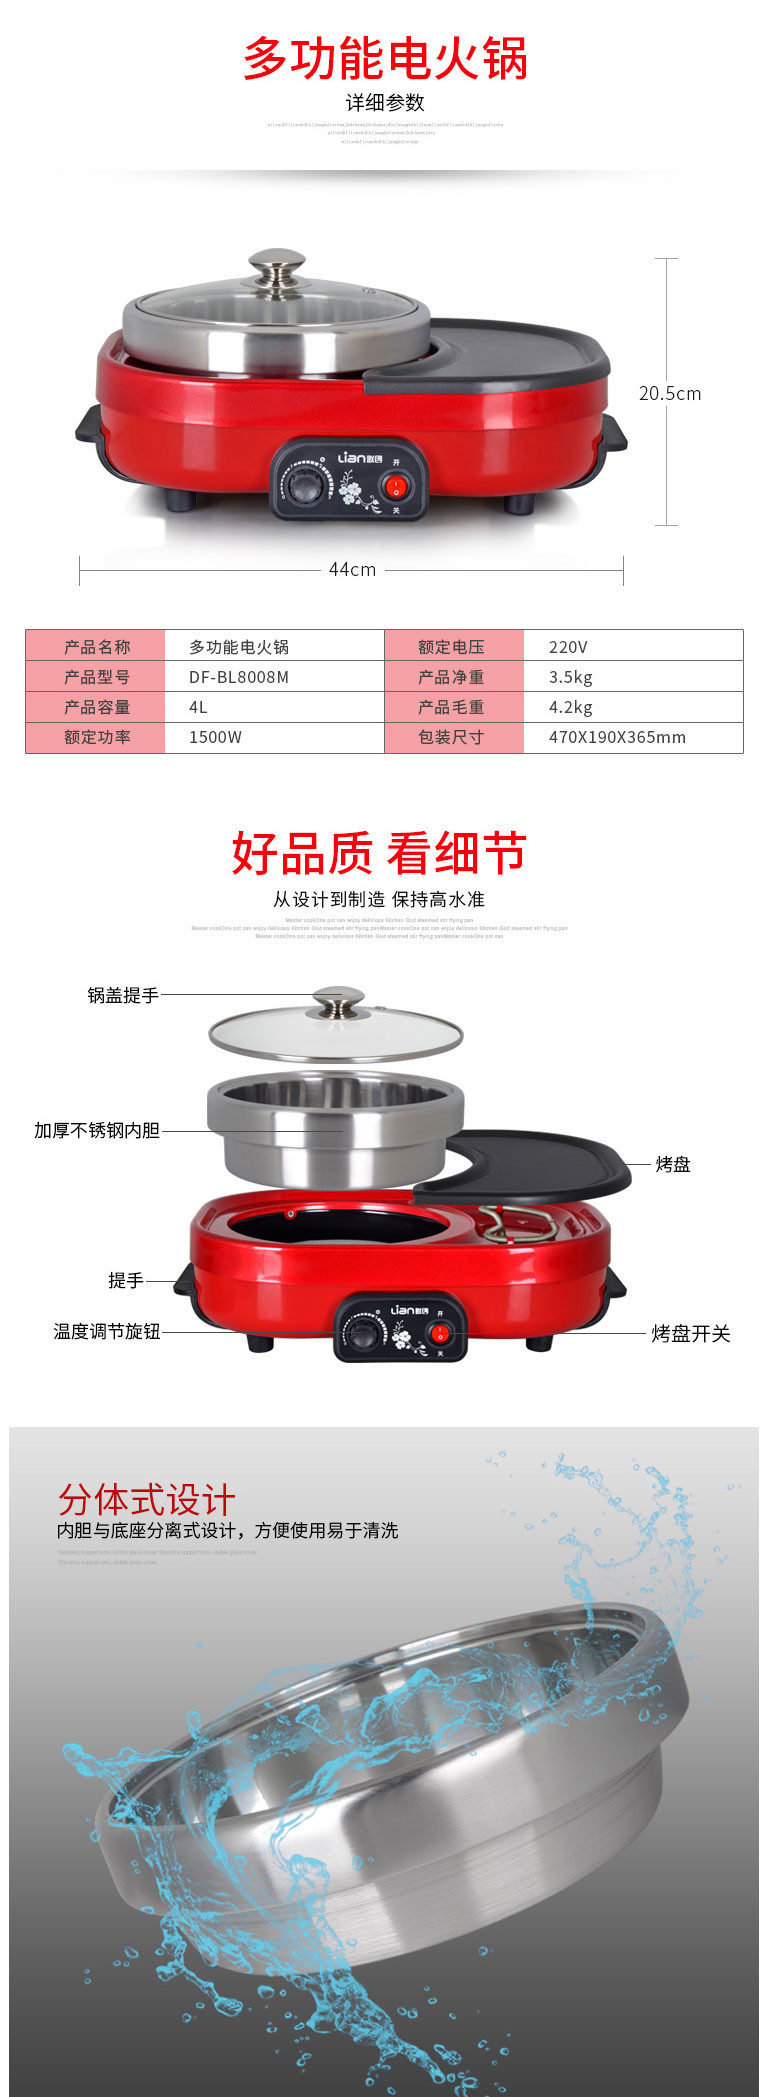 联创/Lianc 电火锅电烤炉家用多功能一体无烟电烤盘烤涮一体锅DF-BL8008M容量4L